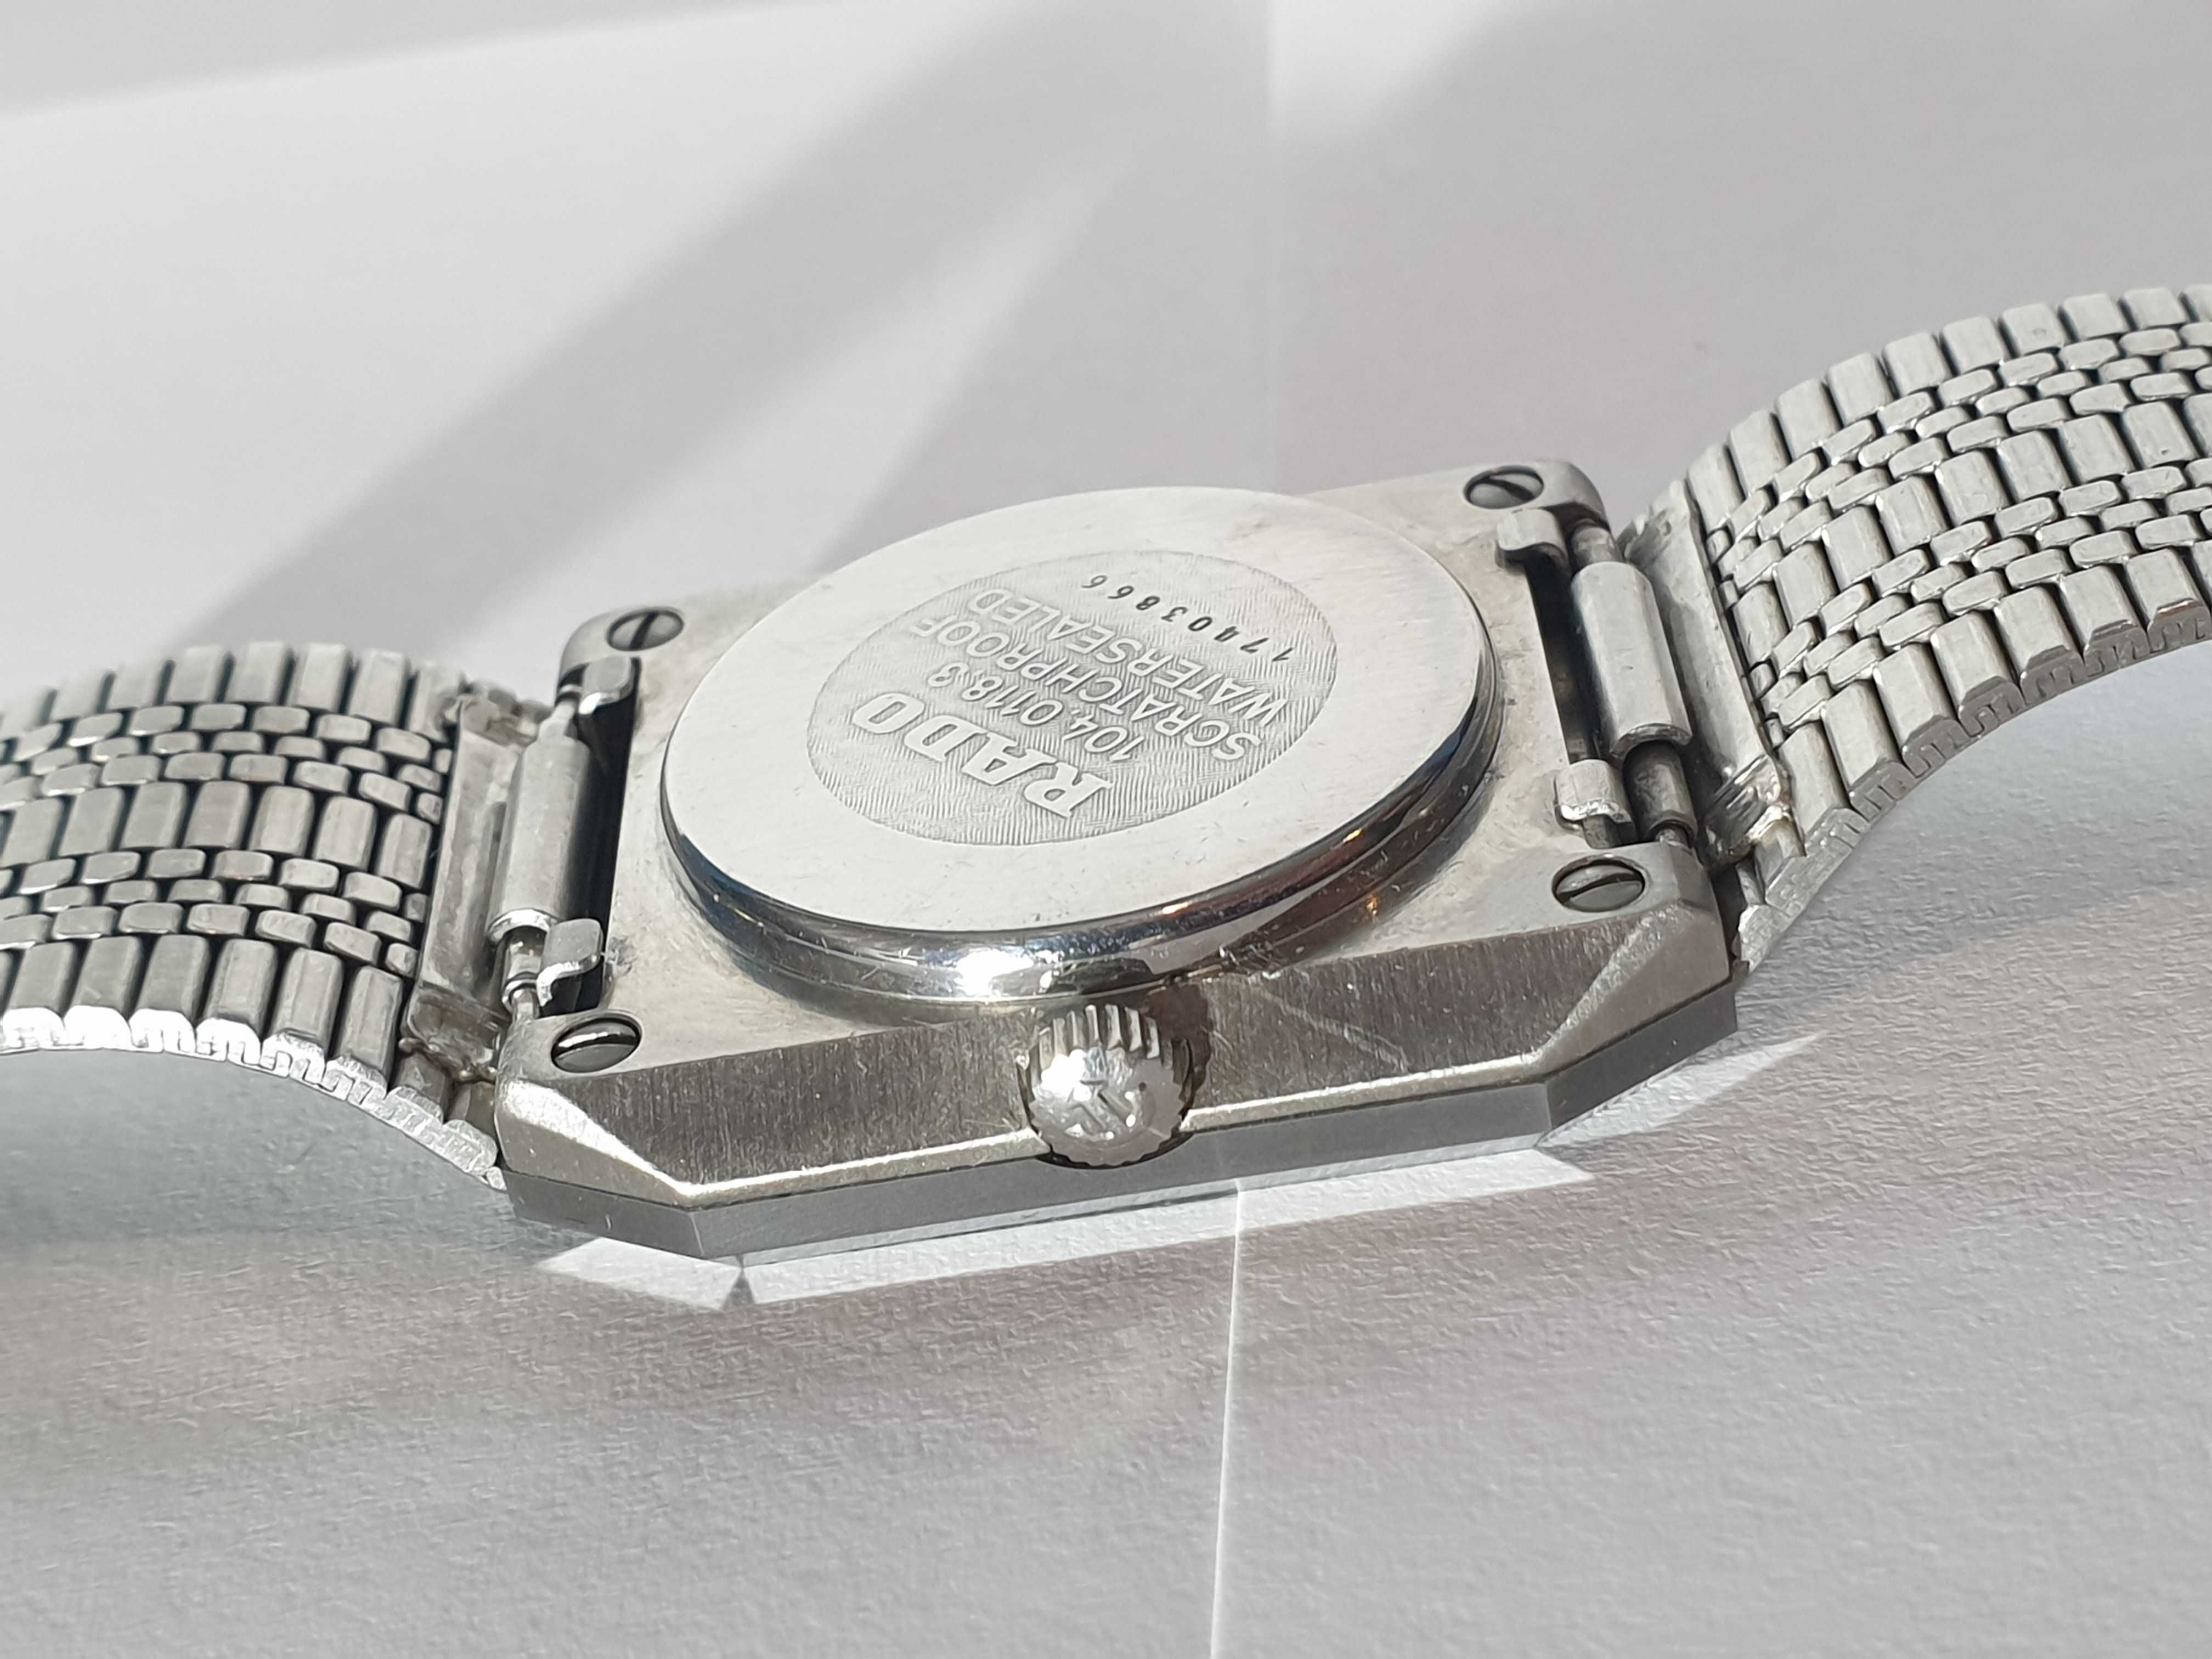 Oryginalny RADO DIASTAR meski szwajcarski zegarek kwarcowy